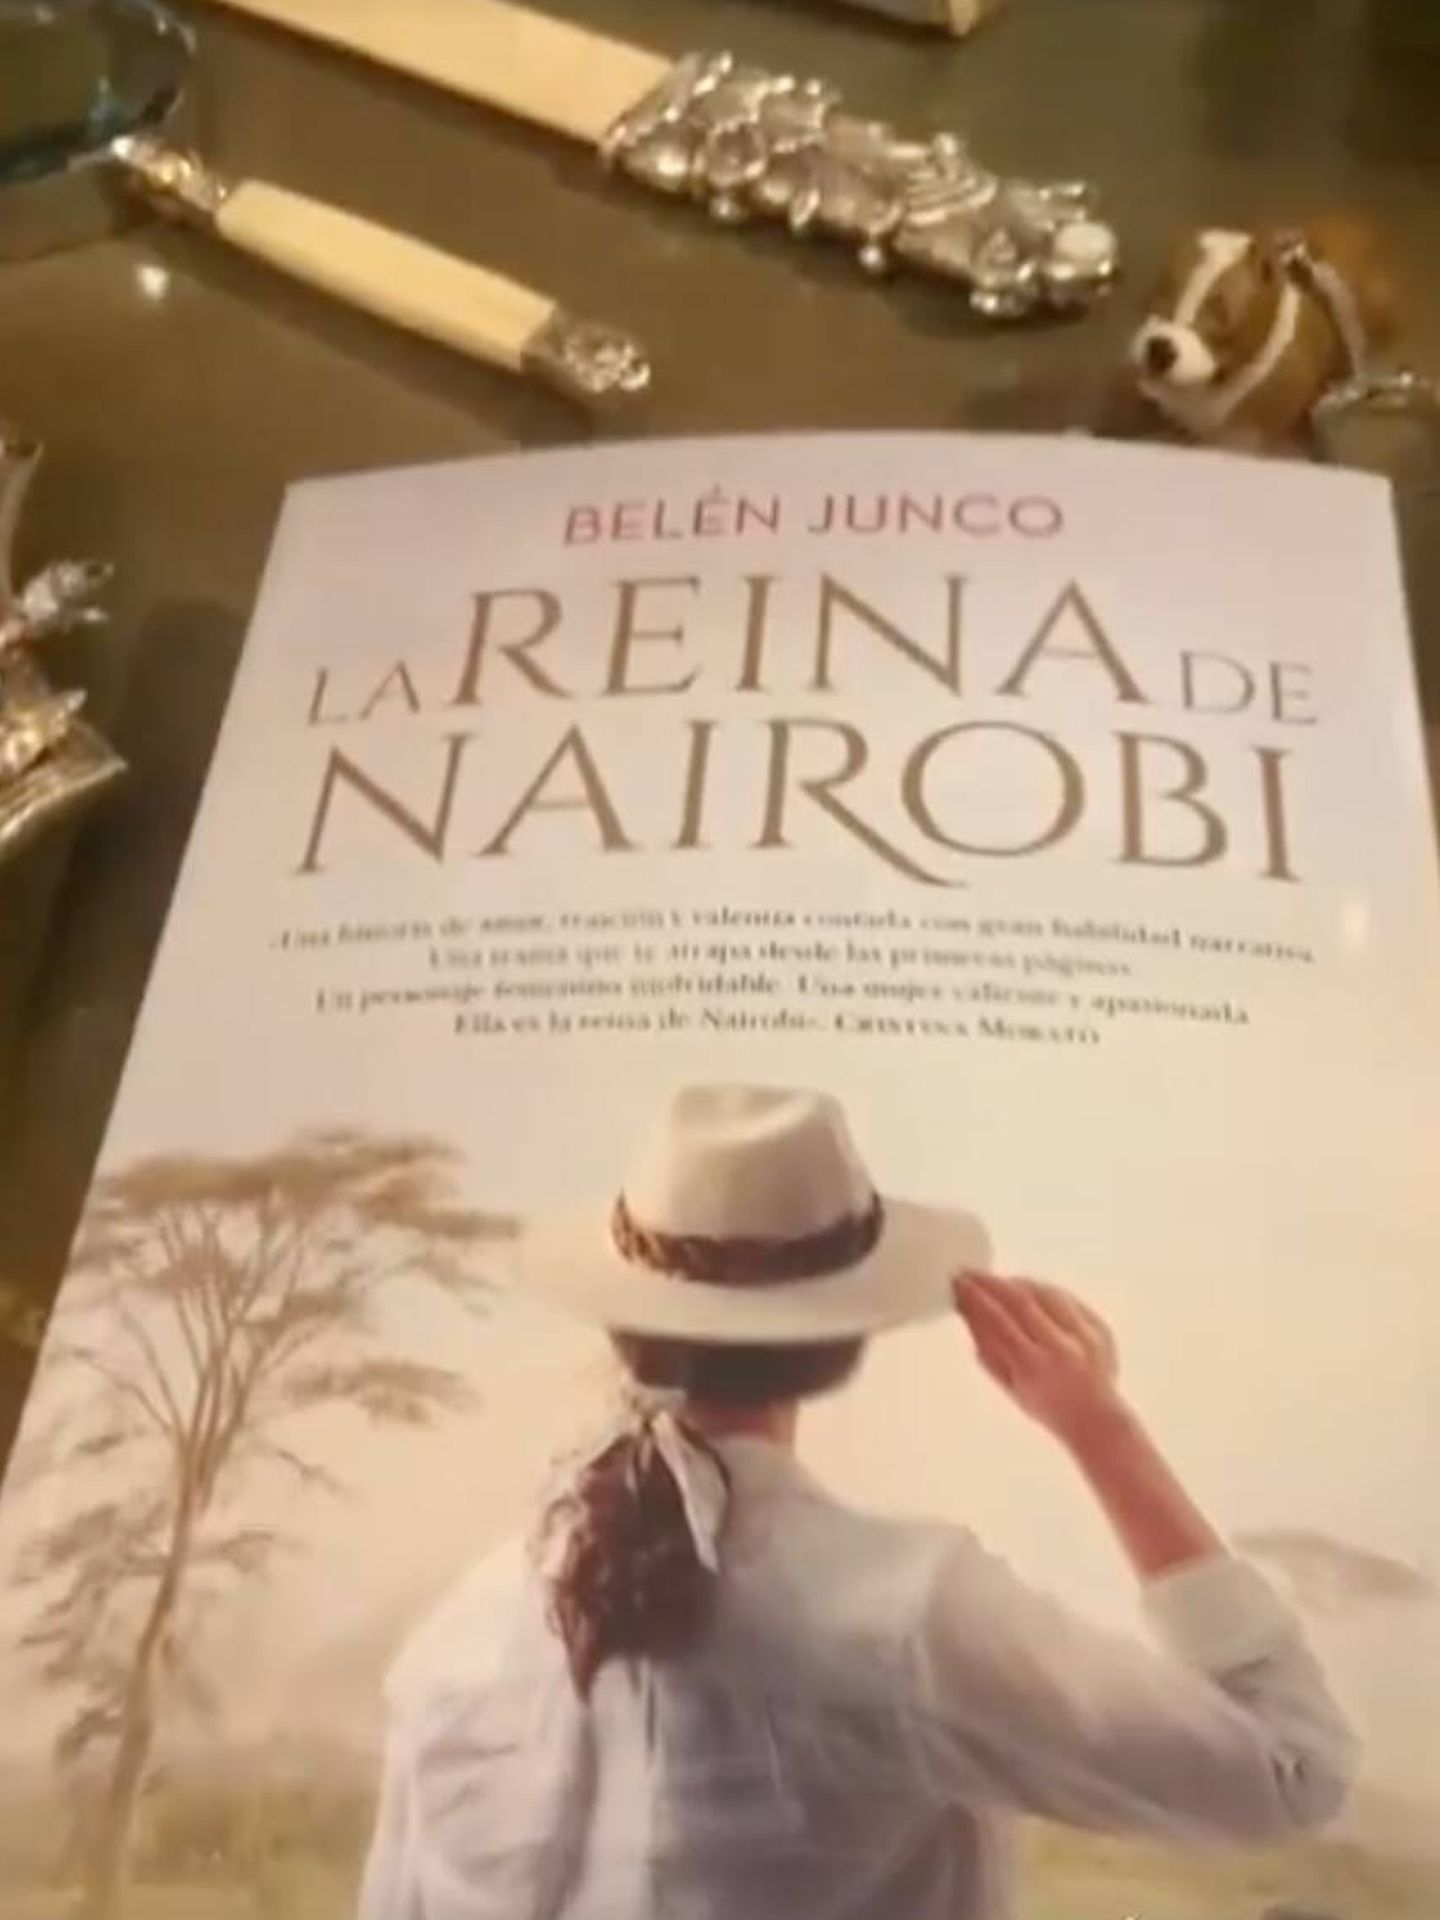 El libro 'La reina de Nairobi', que está leyendo Carmen Lomana. (Instagram/@carmen_lomana)